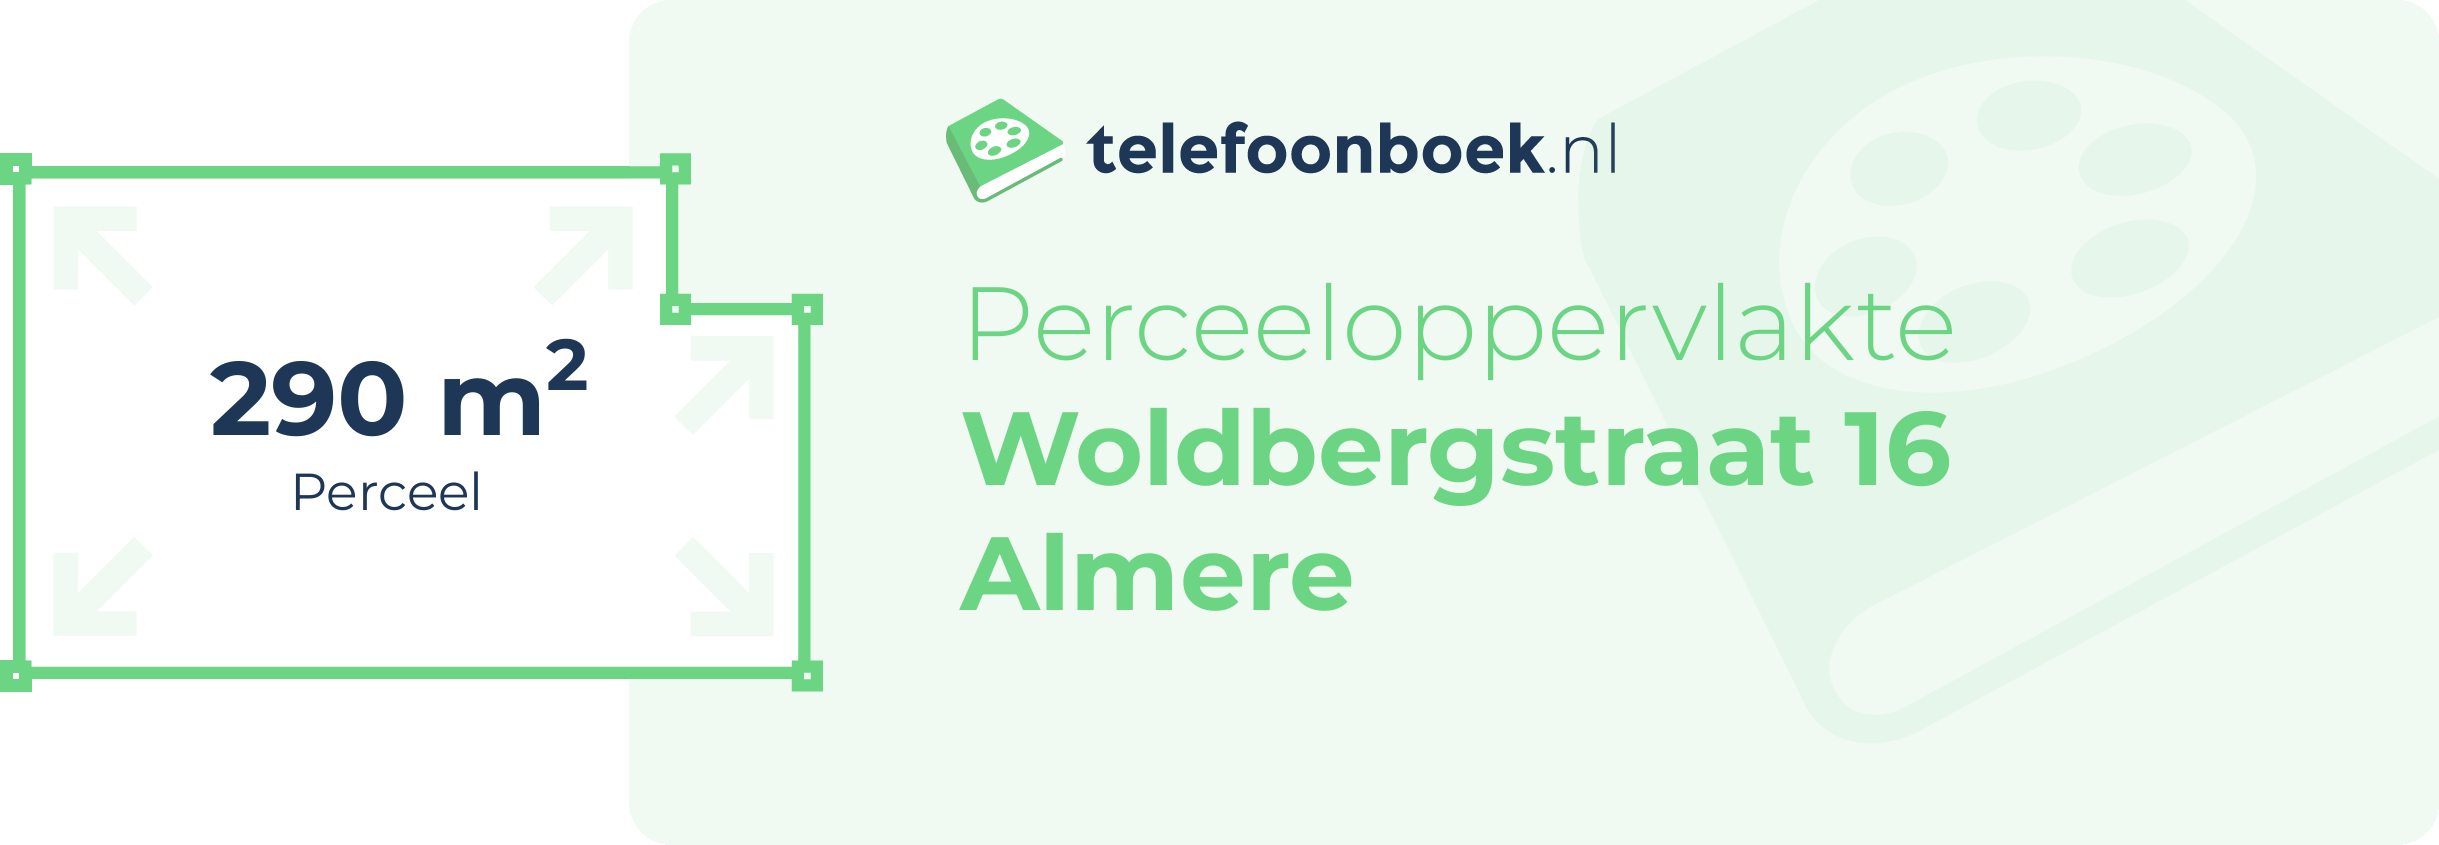 Perceeloppervlakte Woldbergstraat 16 Almere